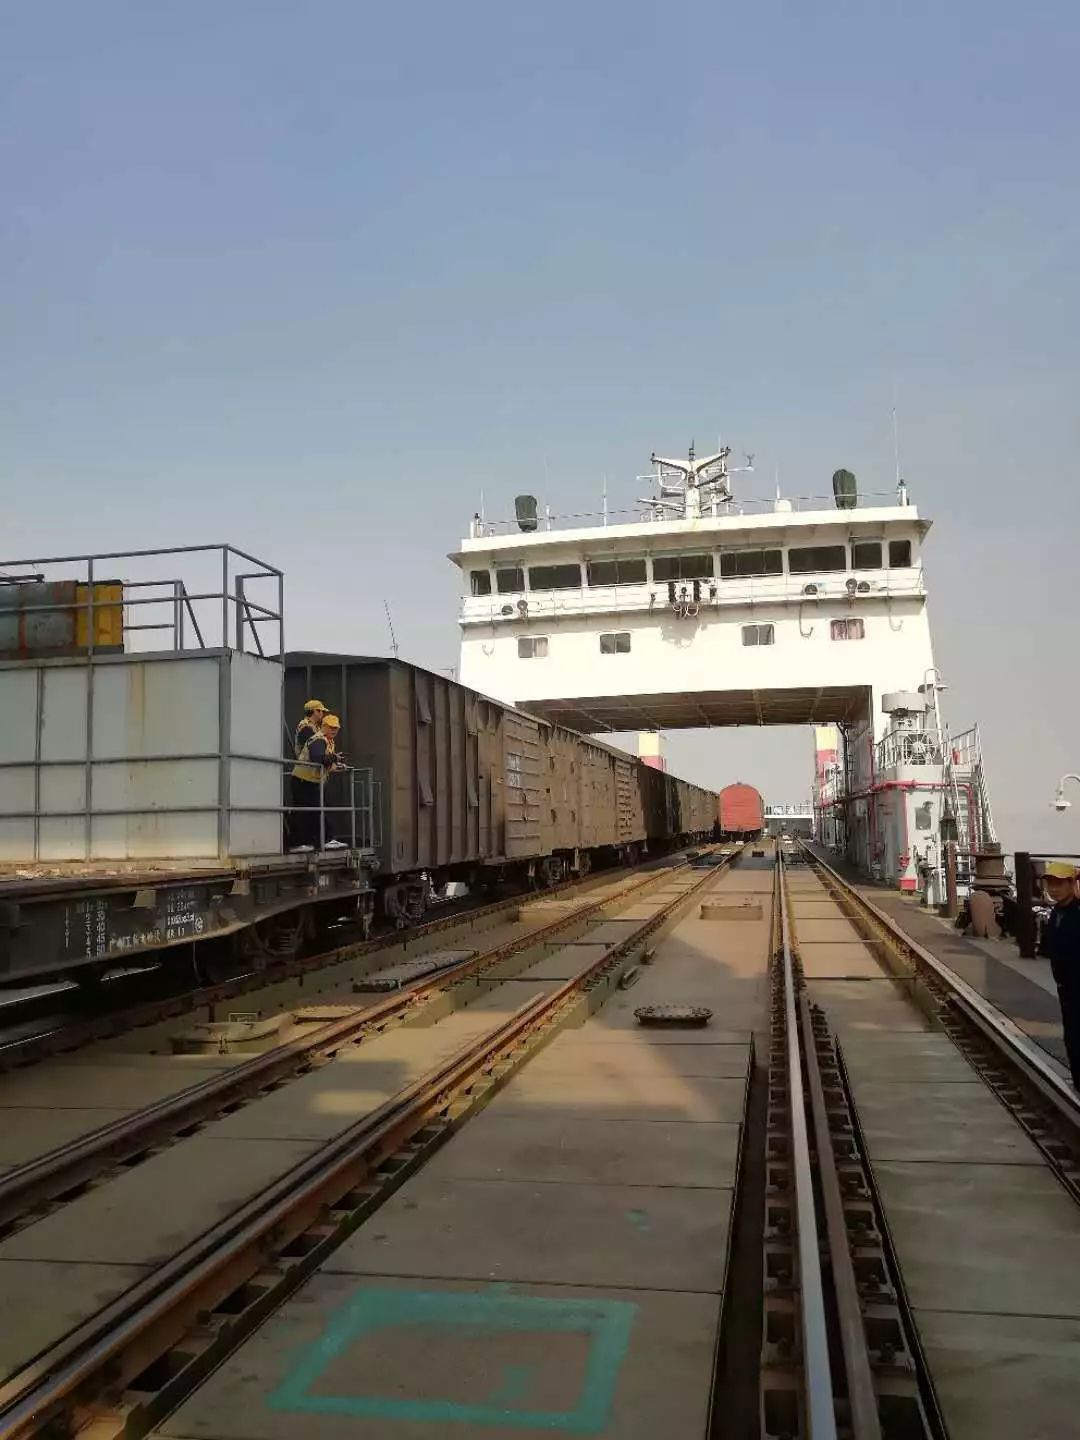 这是国内最后一条内河火车轮渡,在靖江